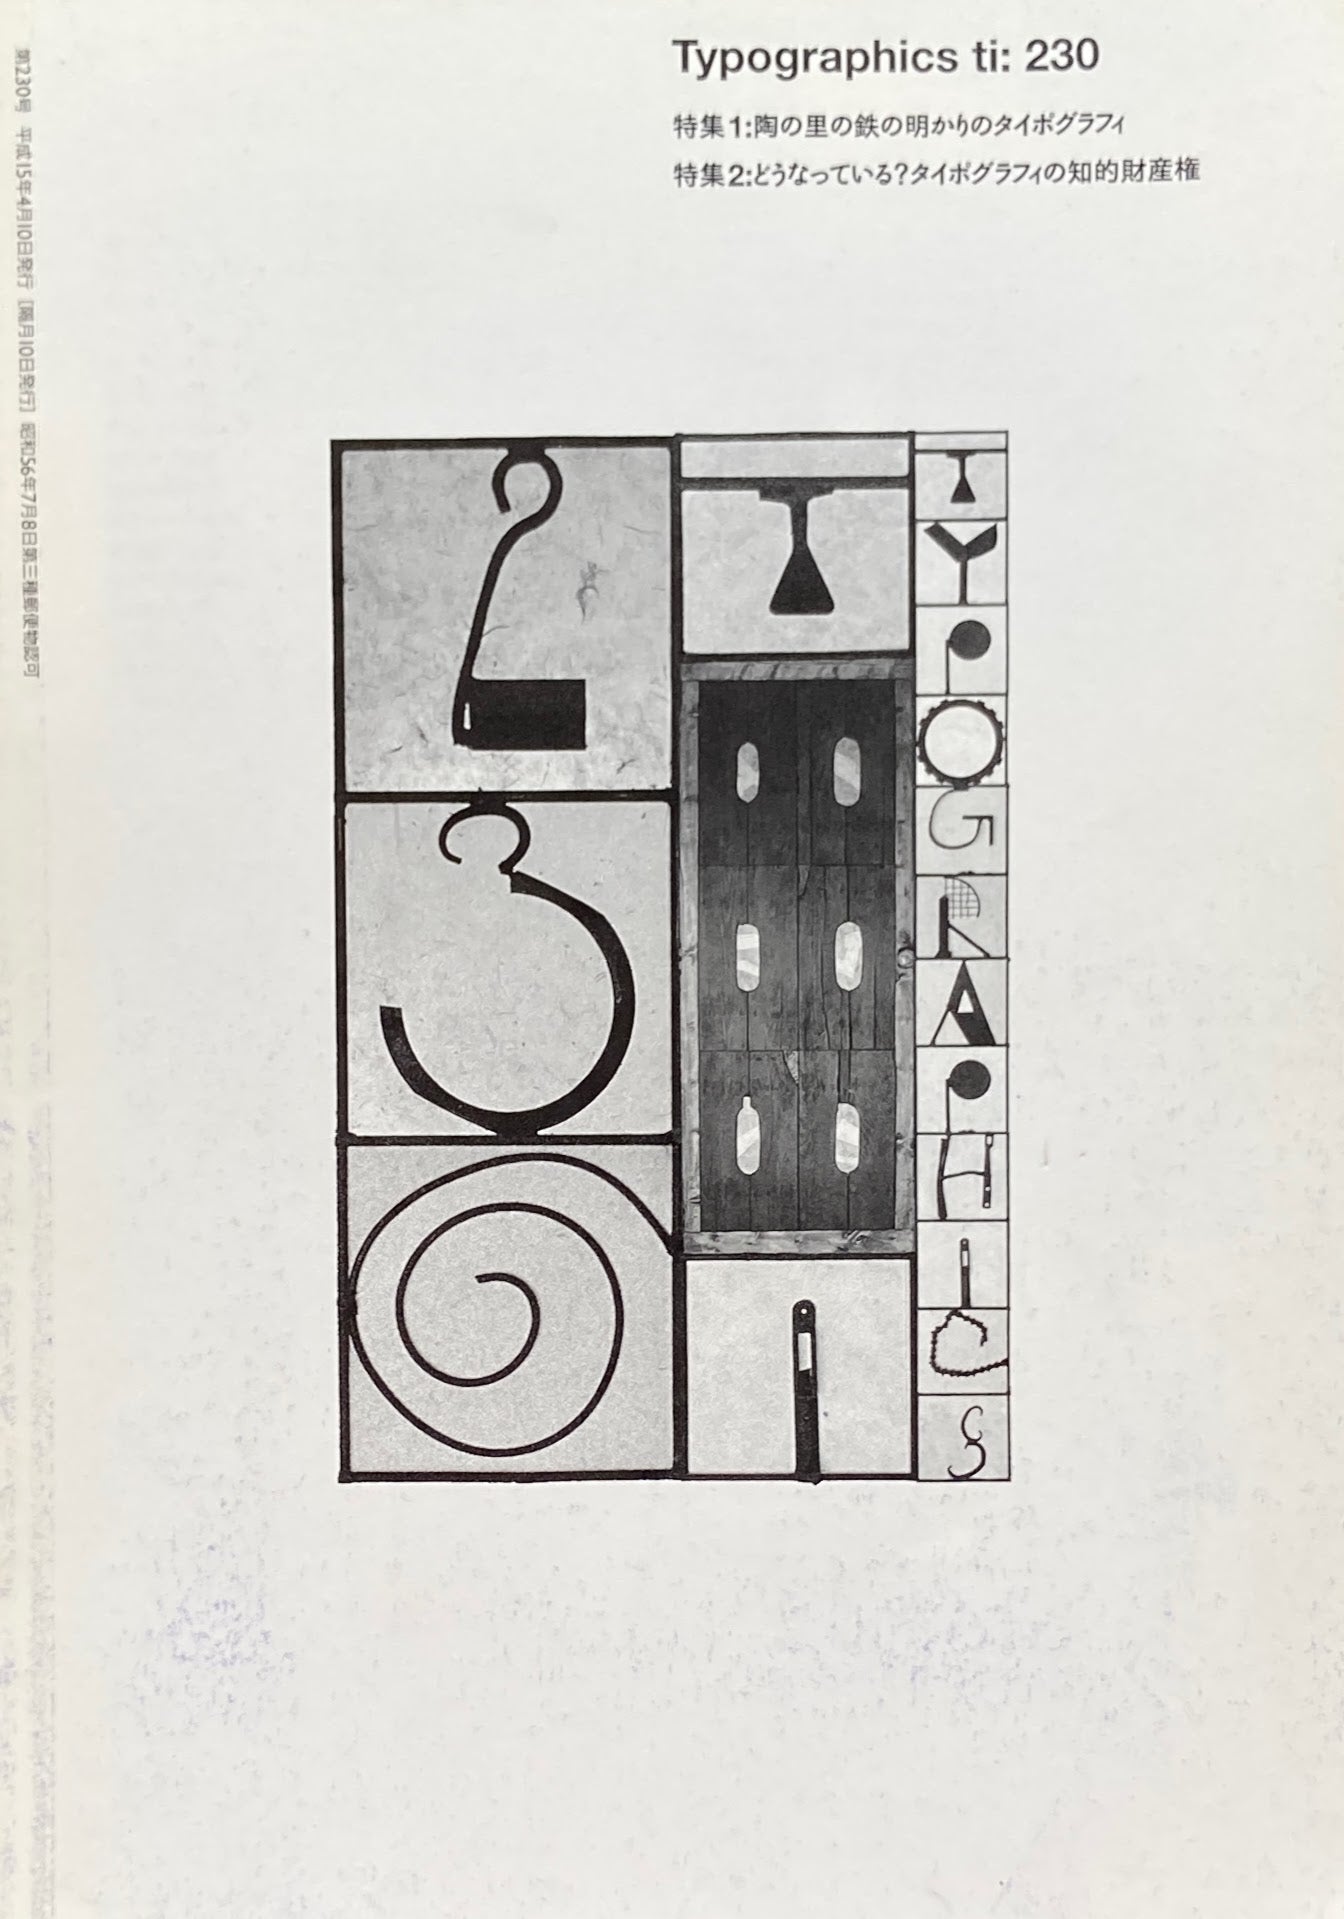 タイポグラフィックス・ティー　Typographics ti: No230 2003年4月号　陶の里の鉄の明かりのタイポグラフィ　